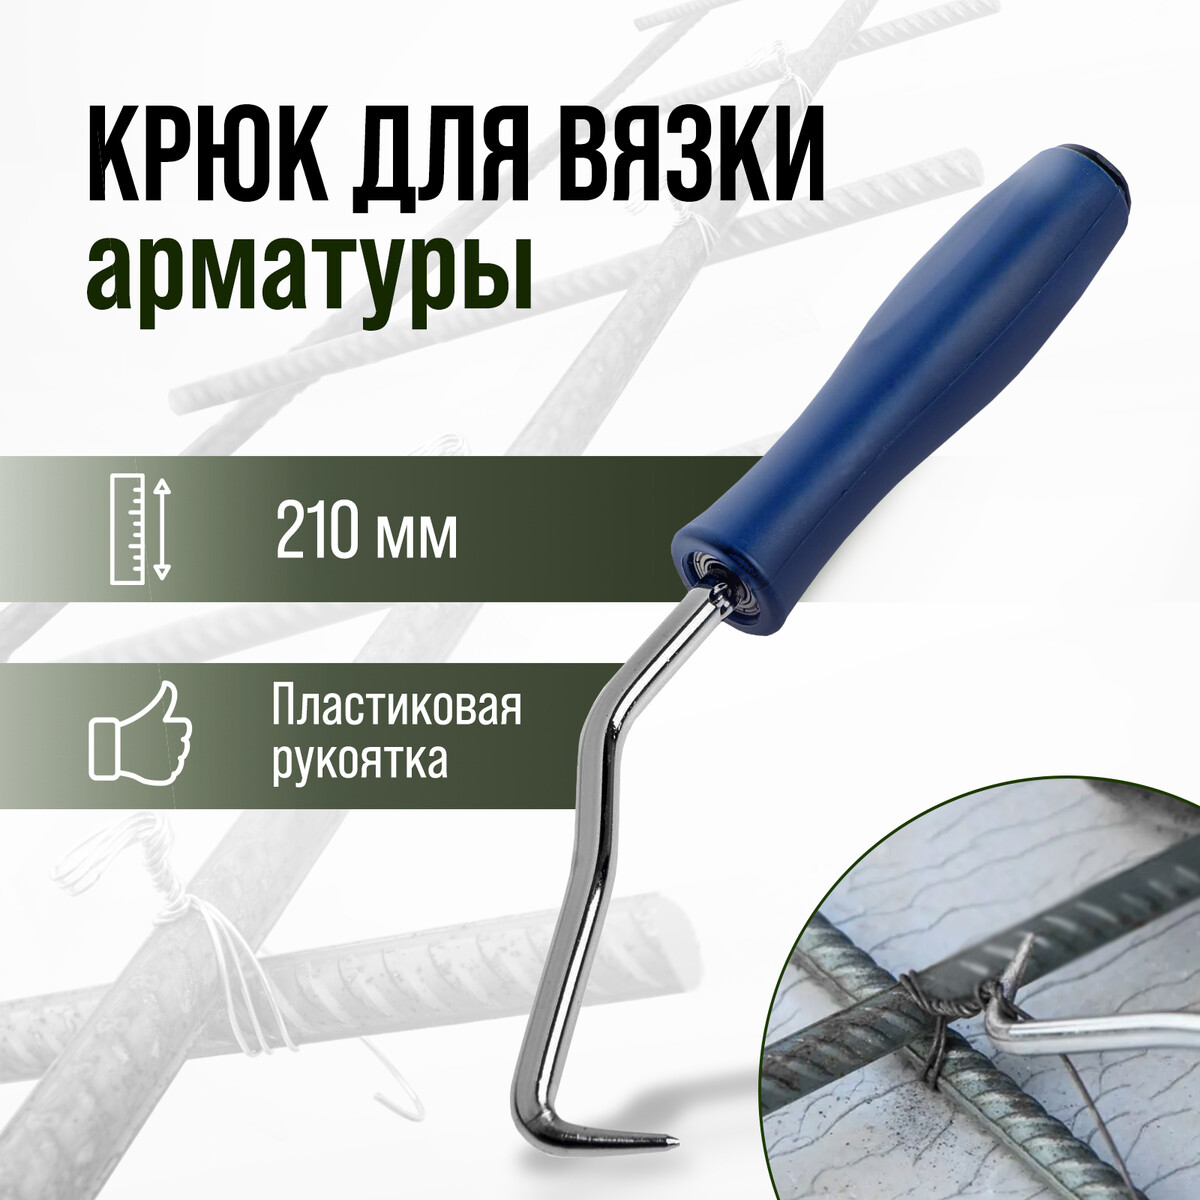 Крюк для вязки арматуры тундра, пластиковая рукоятка, 210 мм